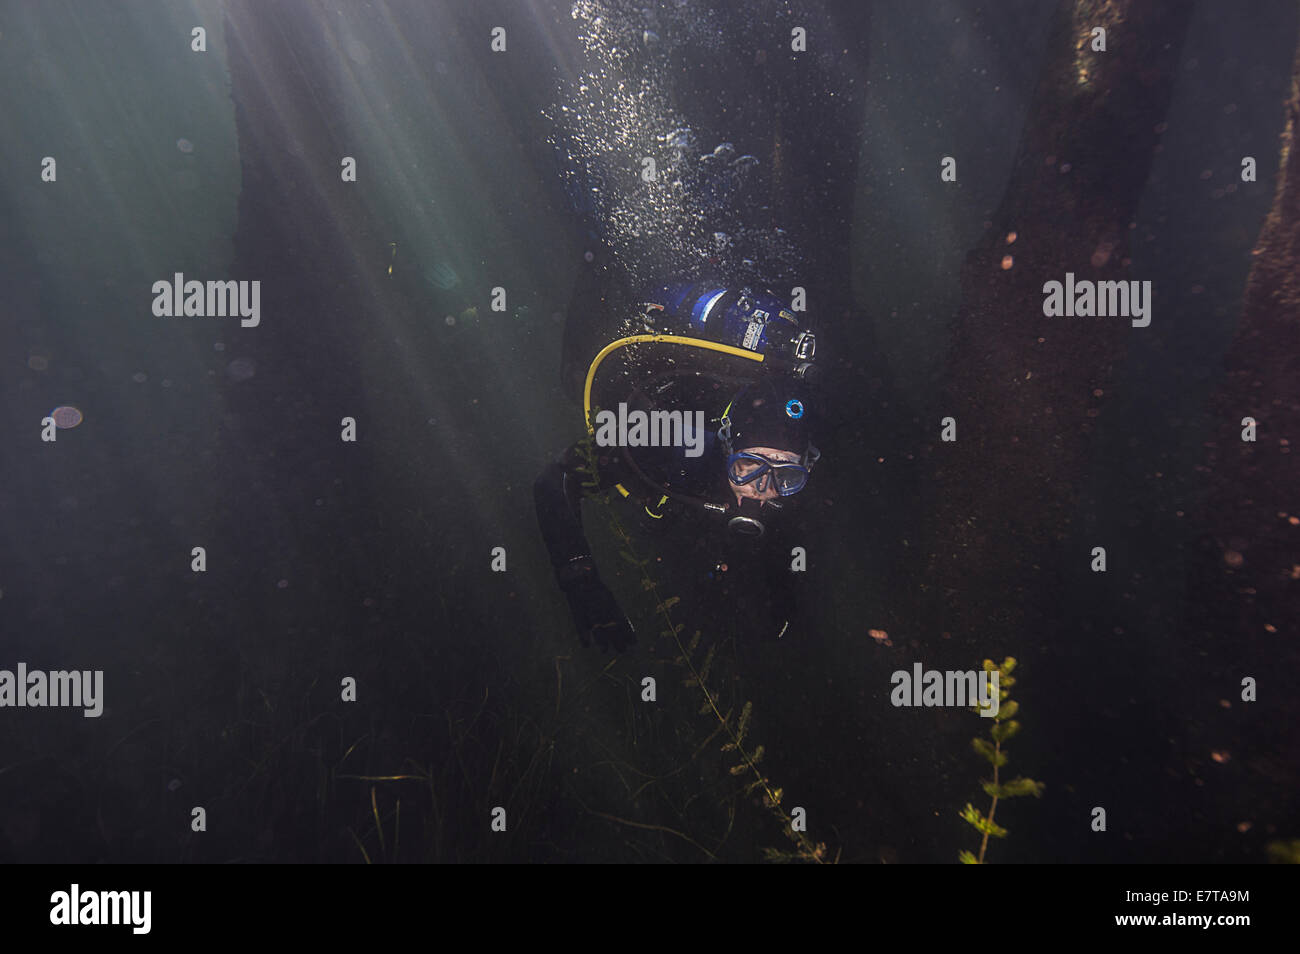 A scuba diver at the Train Bridge in Welland, Ontario, Canada. Stock Photo